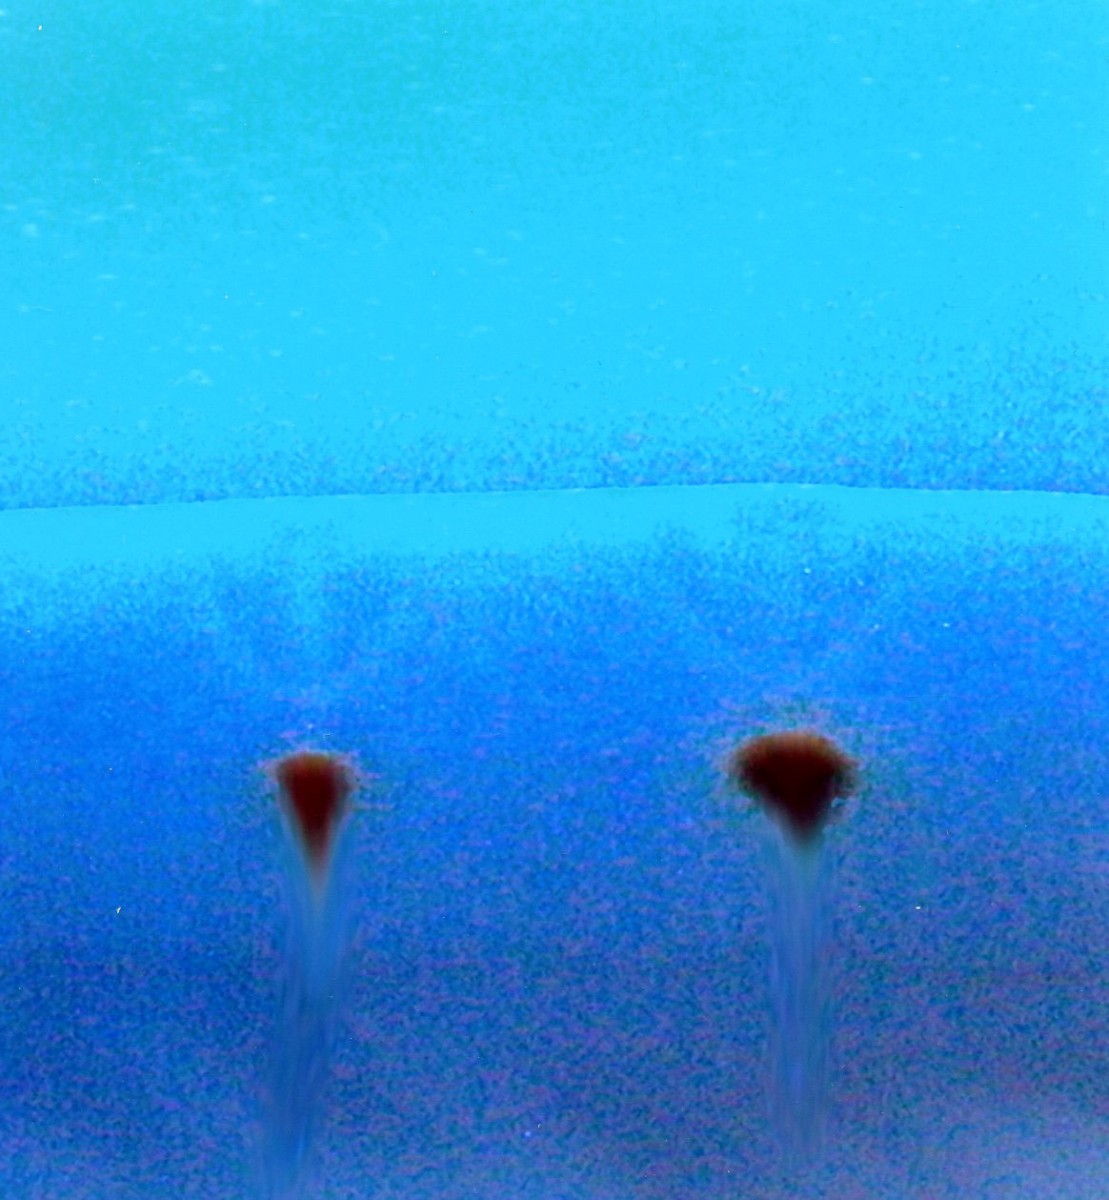 Εικ. 7. Φωτογραφία της χρωματογραφικής πλάκας σε υπεριώδες όπου παρατηρούνται τα ψευδοχρώματα των κηλίδων της βαφής. 